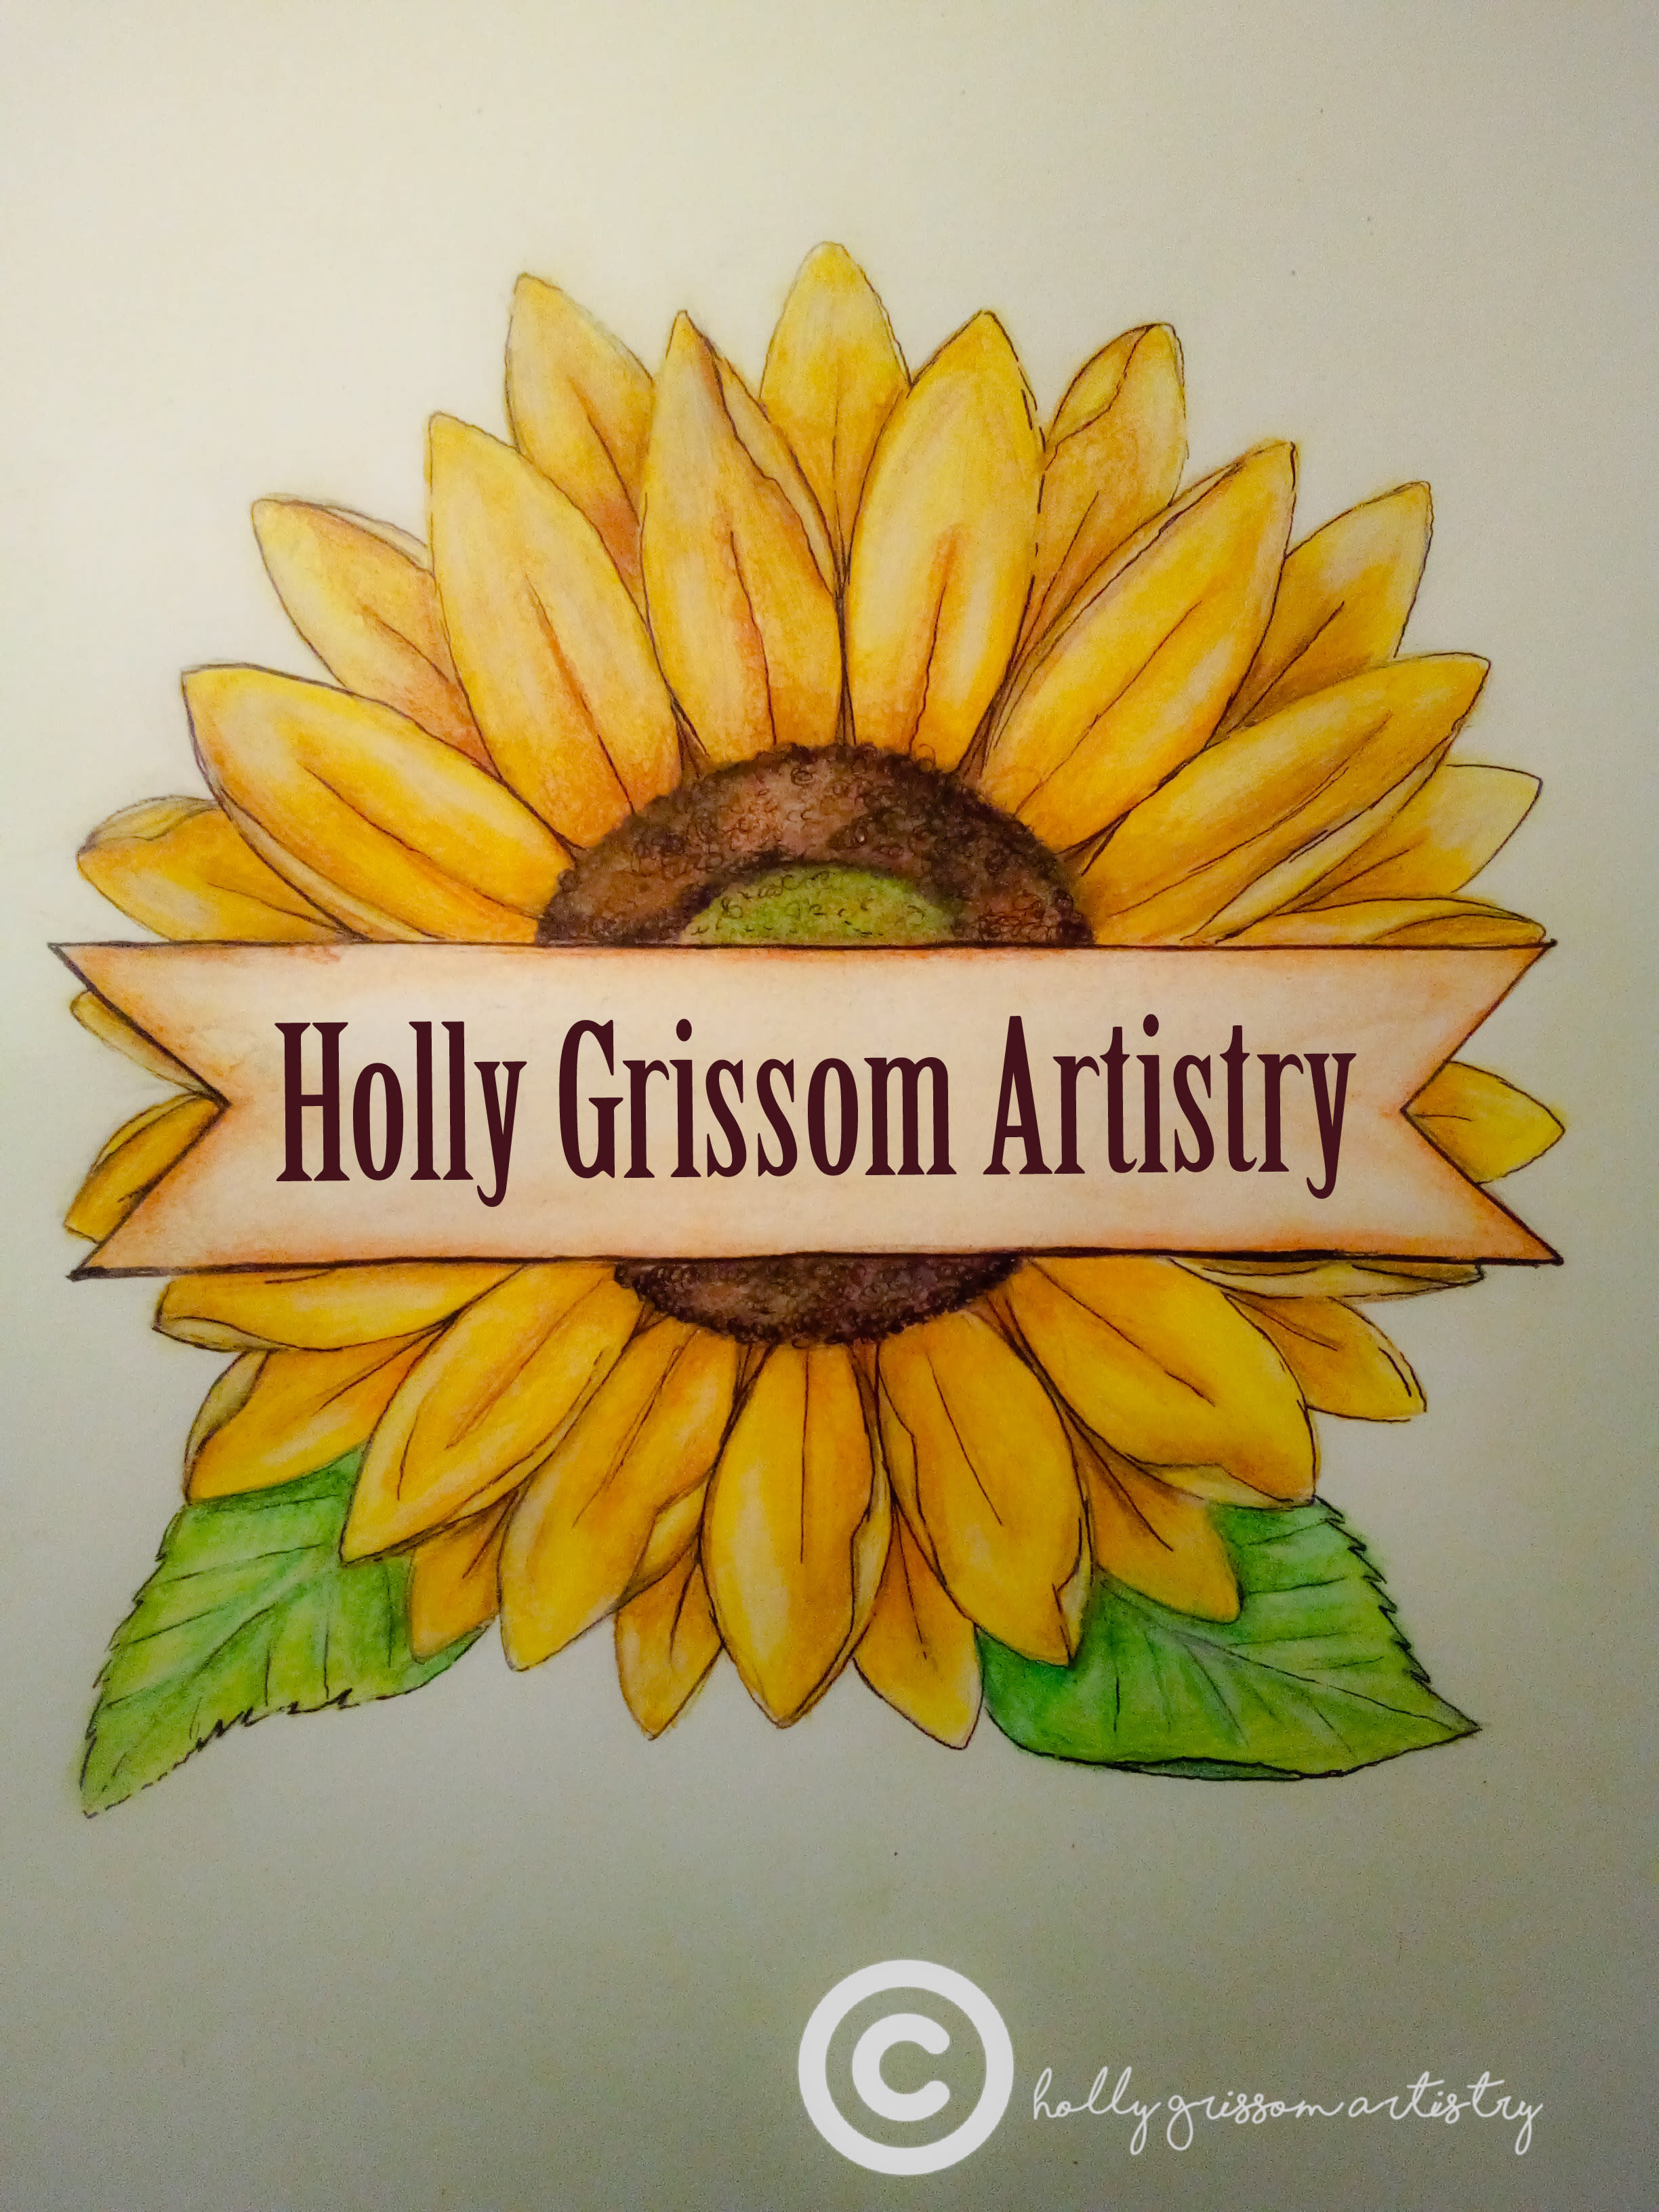 Holly Grissom Artistry